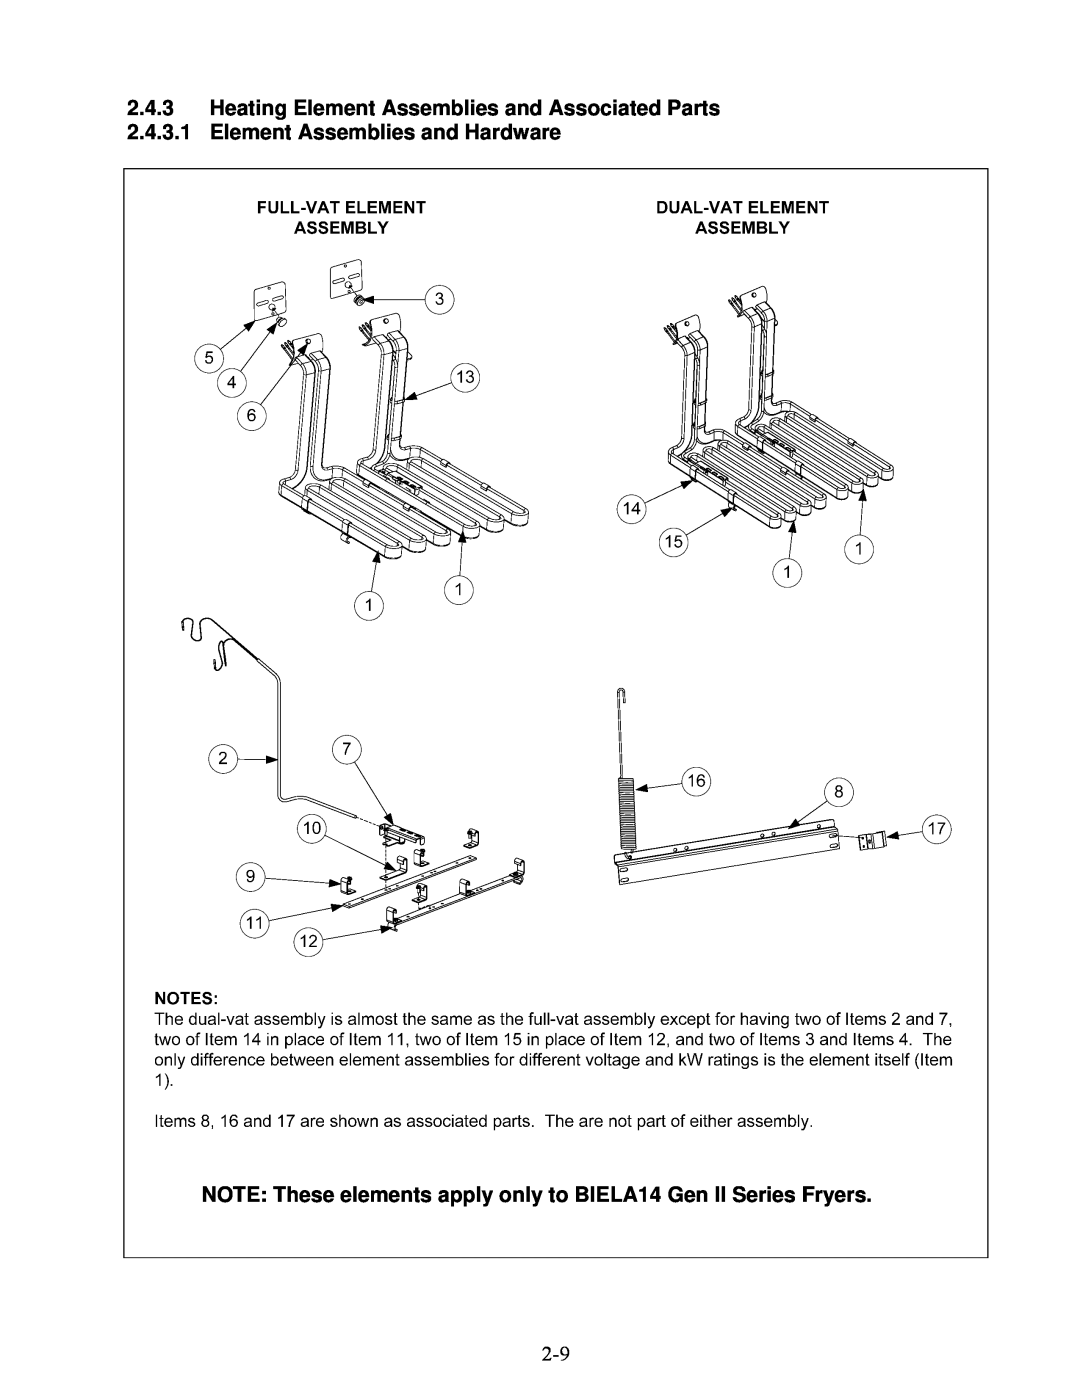 Frymaster BIELA14 manual 2.4.3Heating Element Assemblies and Associated Parts 2.4.3.1 Element Assemblies and Hardware 